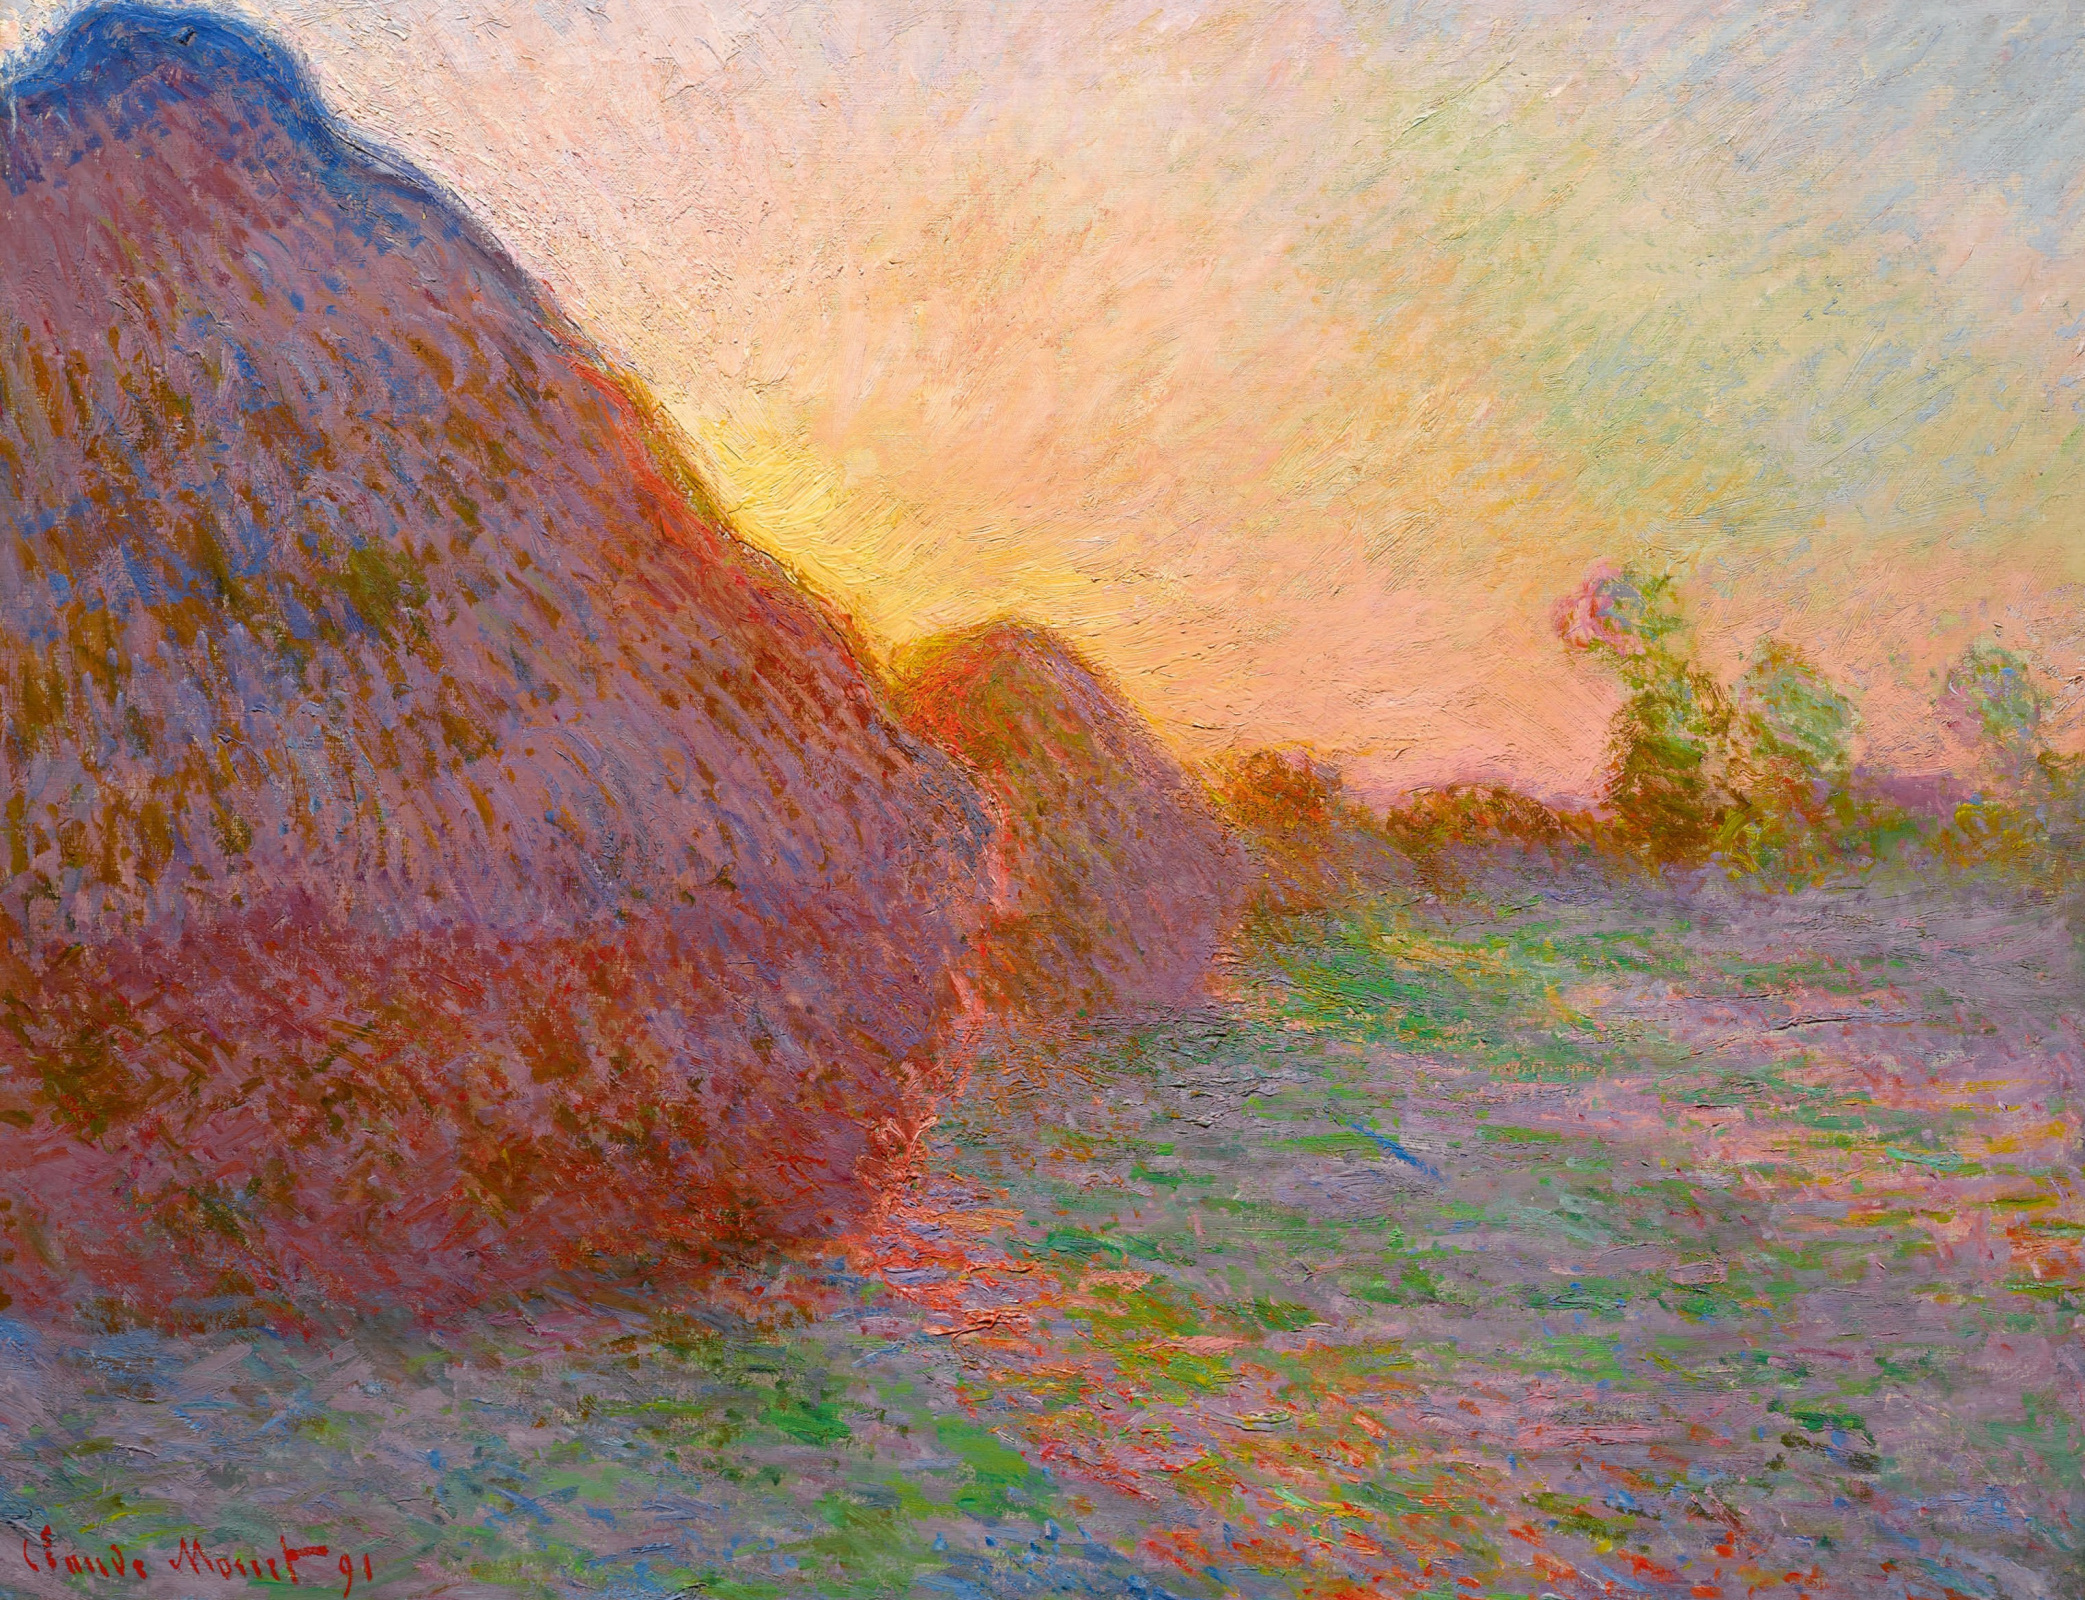 Cubeta posponer Hula hoop Claude Monet Pajares, 1891: Descripción de la obra | Arthive